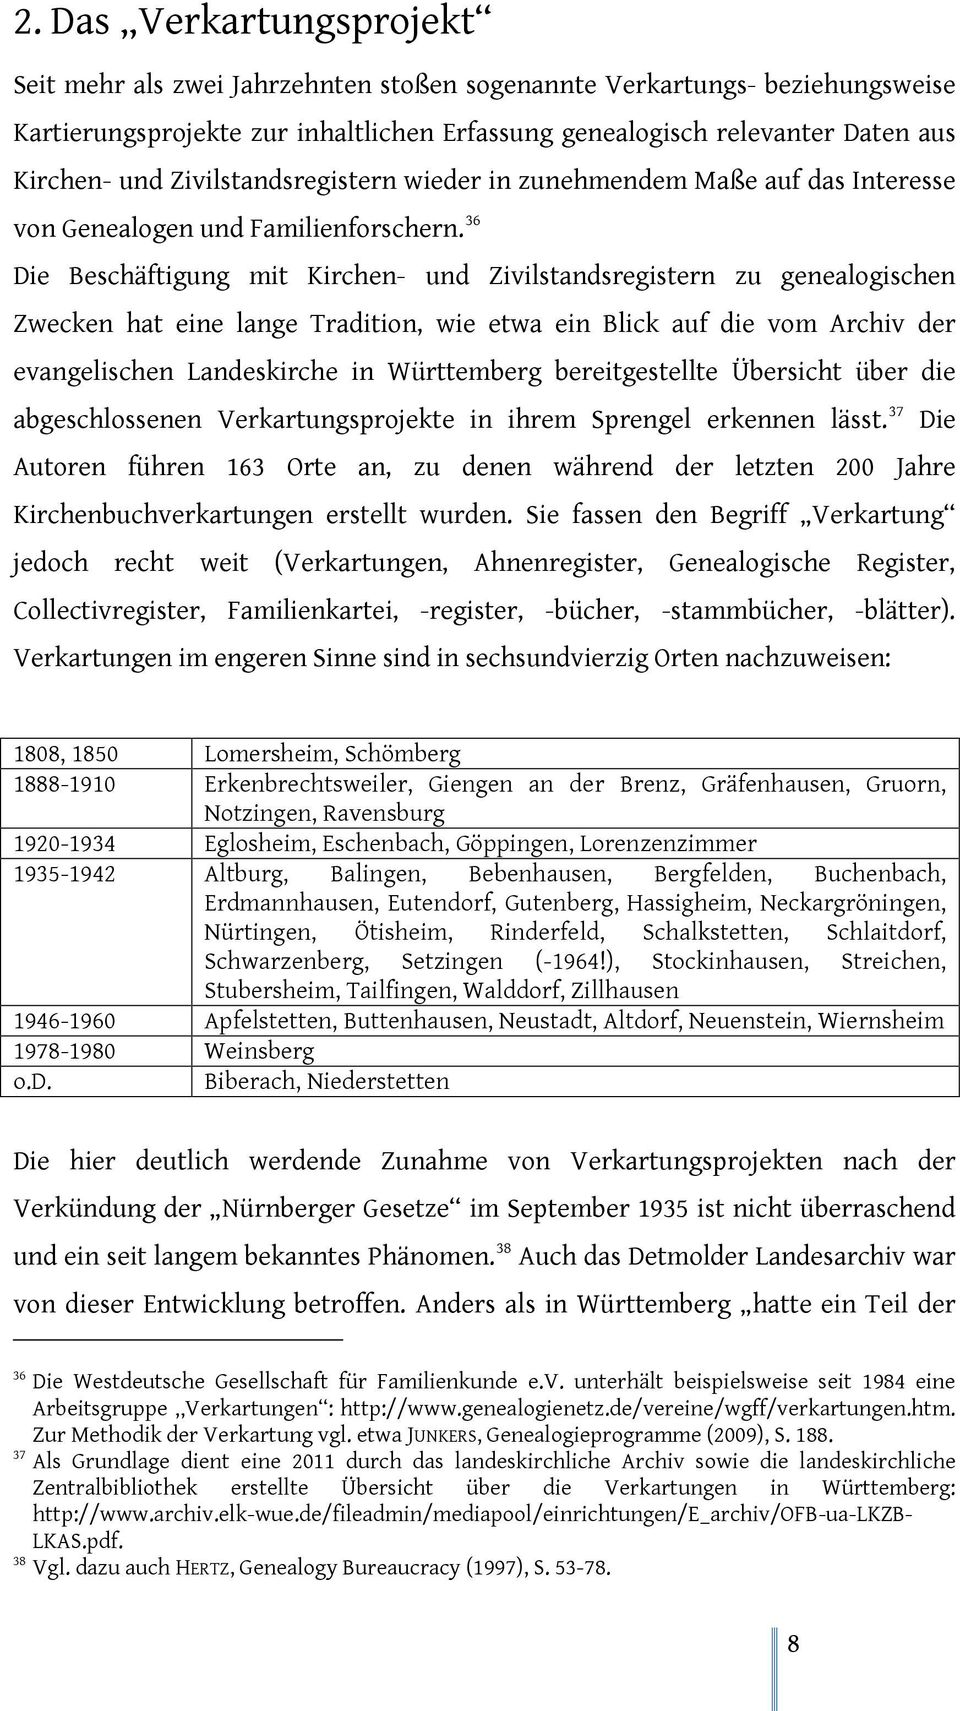 36 Die Beschäftigung mit Kirchen- und Zivilstandsregistern zu genealogischen Zwecken hat eine lange Tradition, wie etwa ein Blick auf die vom Archiv der evangelischen Landeskirche in Württemberg